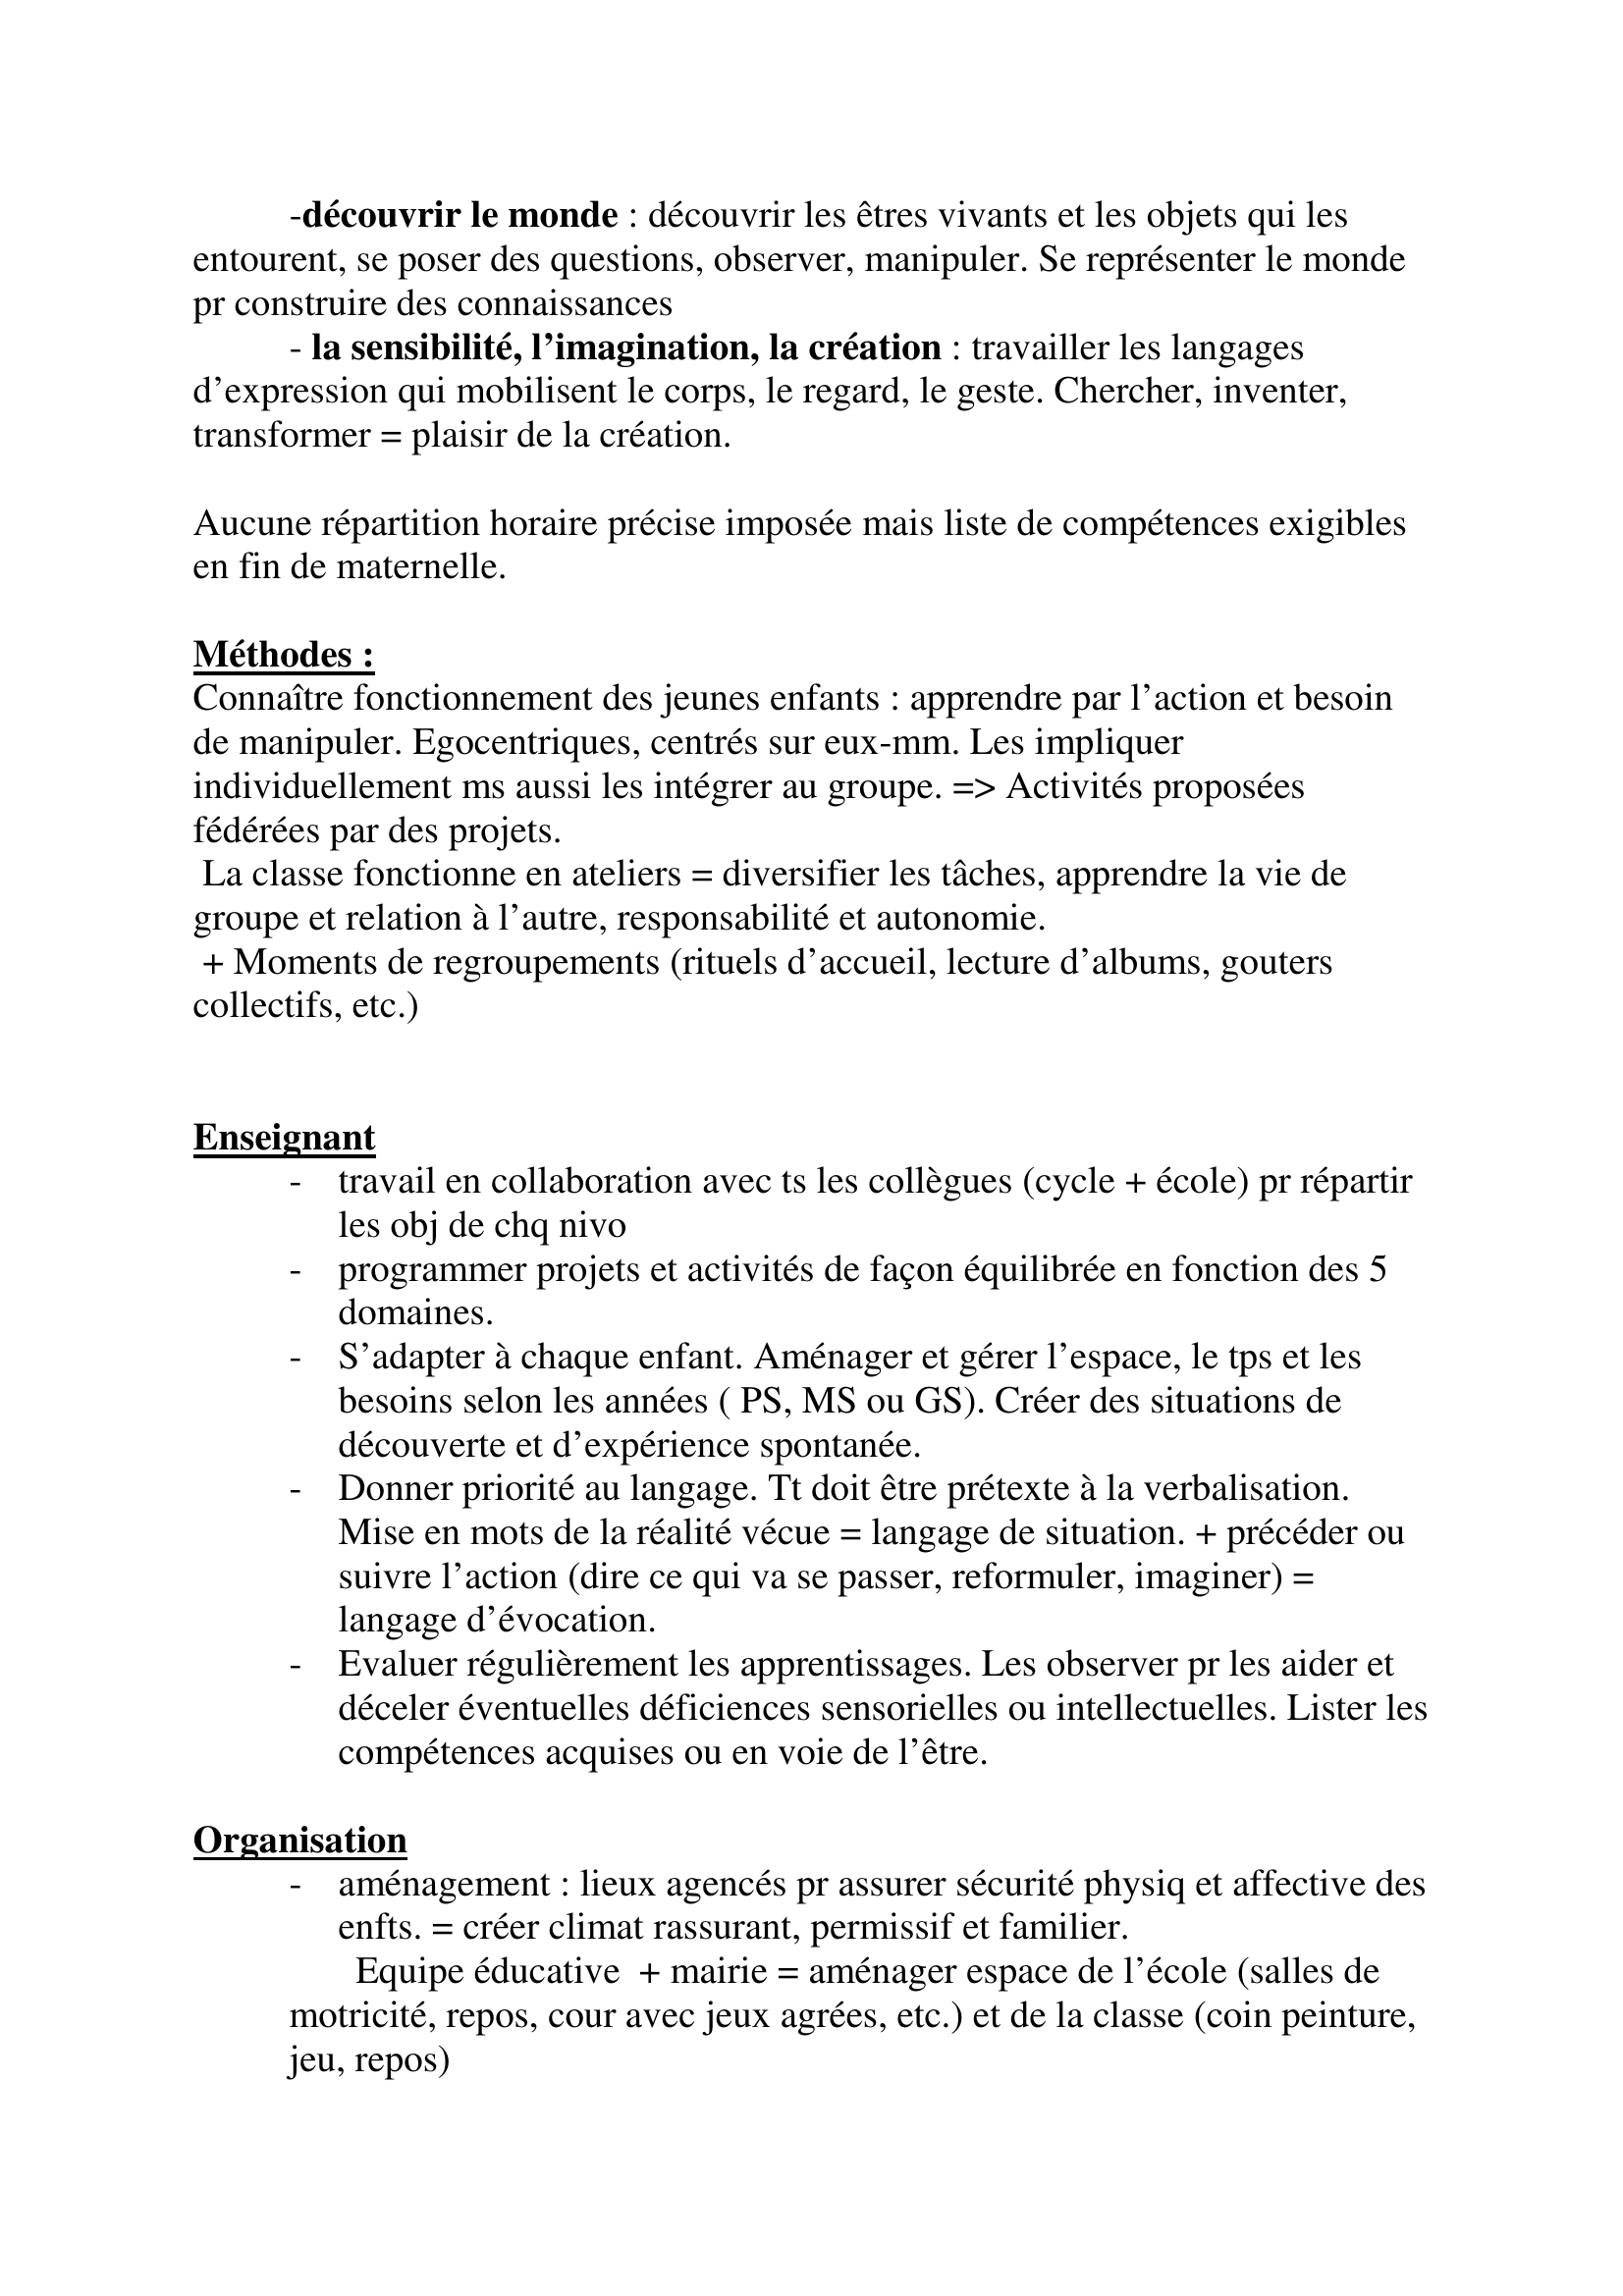 Prévisualisation du document La Maternelle

Fiche construite par Sylvain
sylvain.